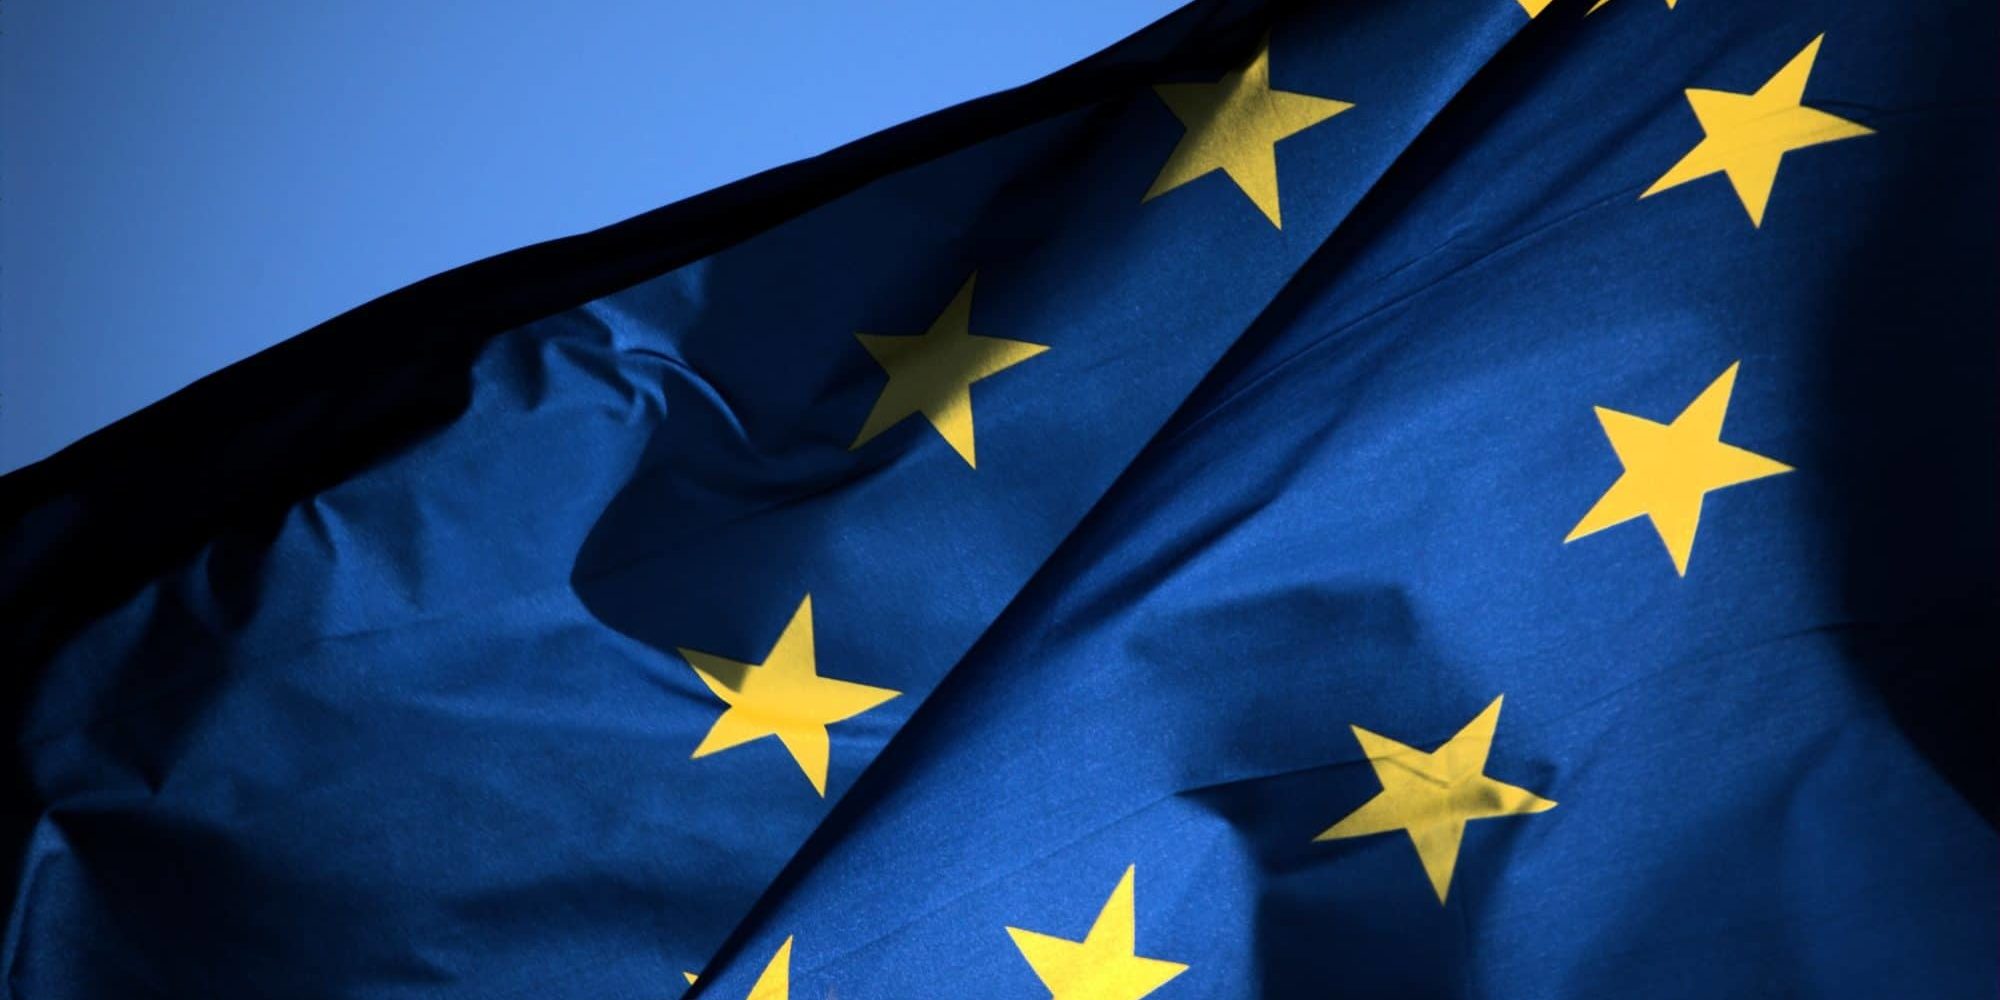 Bandiera Unione Europea Da Firenze all’Europa. Riflessioni tra cultura e politica: parla Massimo Bray